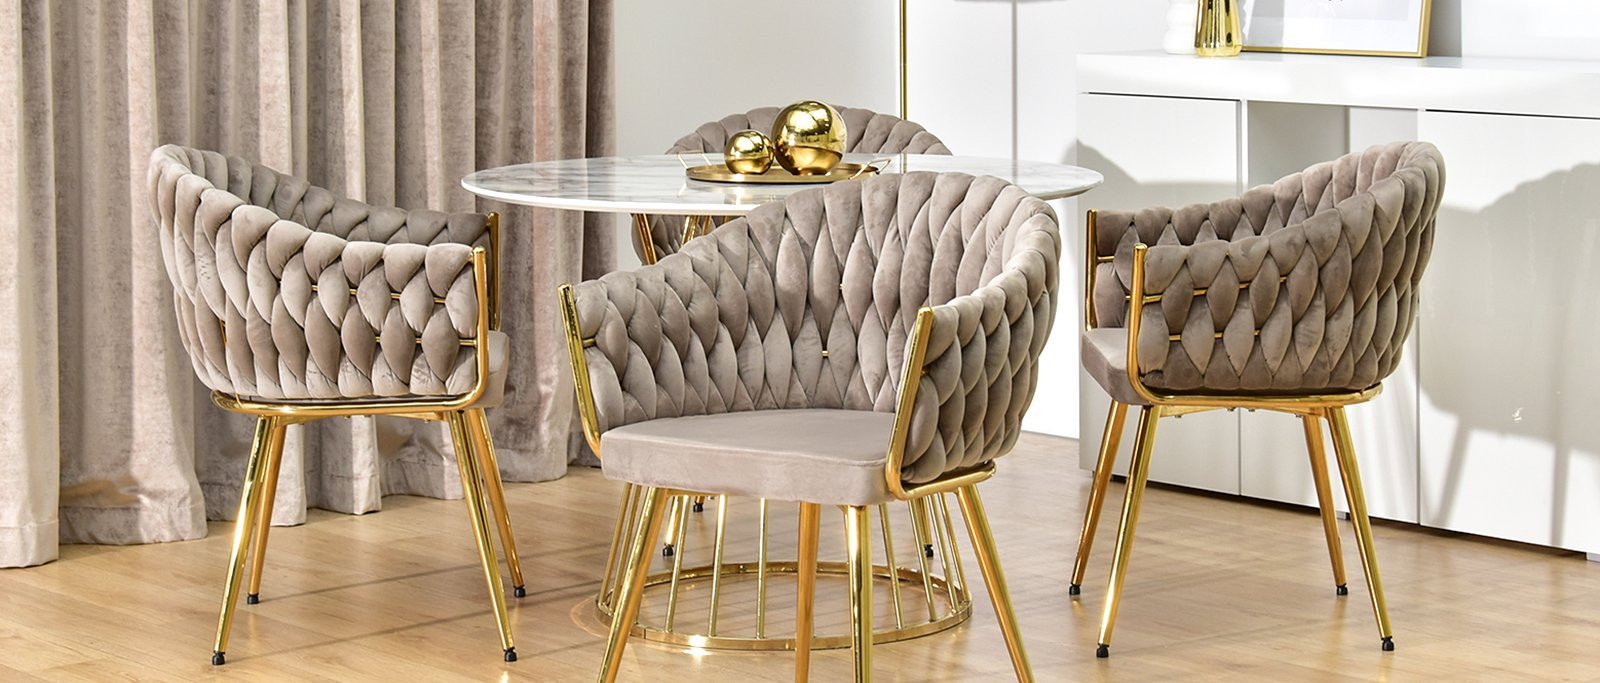 Moda na welur i złoto – musisz zobaczyć te eleganckie krzesła do salonu